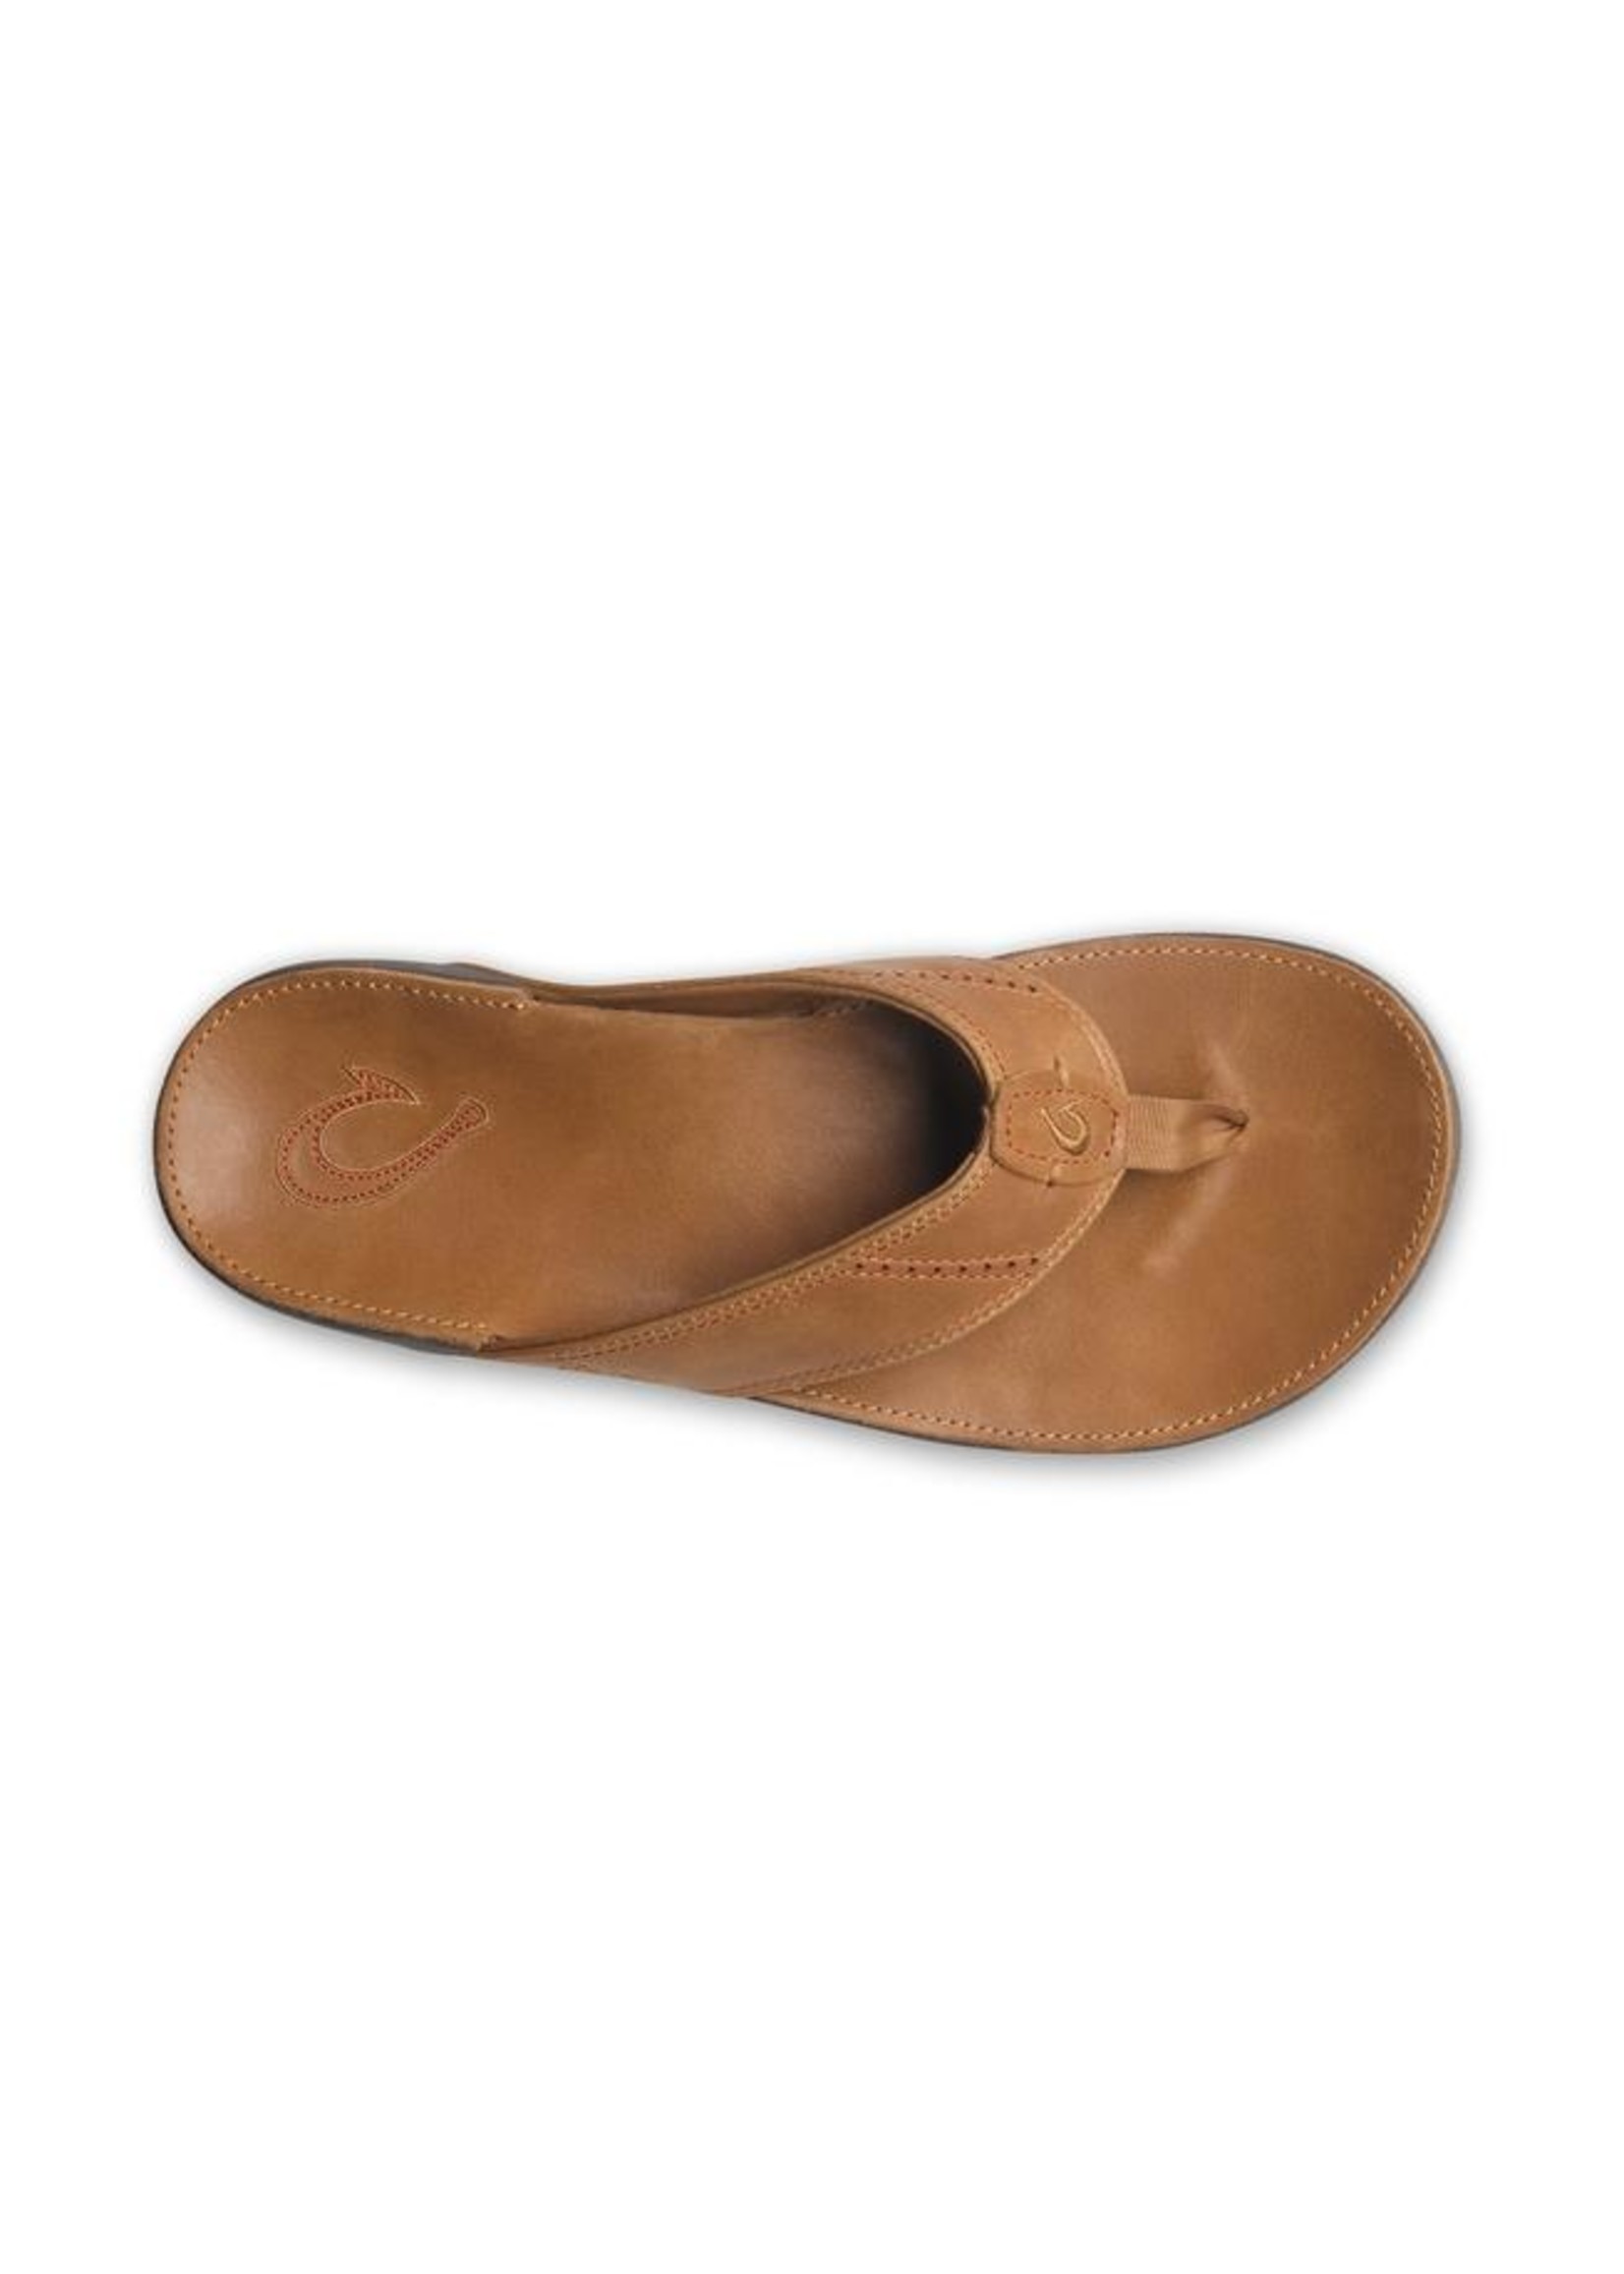 OluKai Nui  Men's Beach Sandals